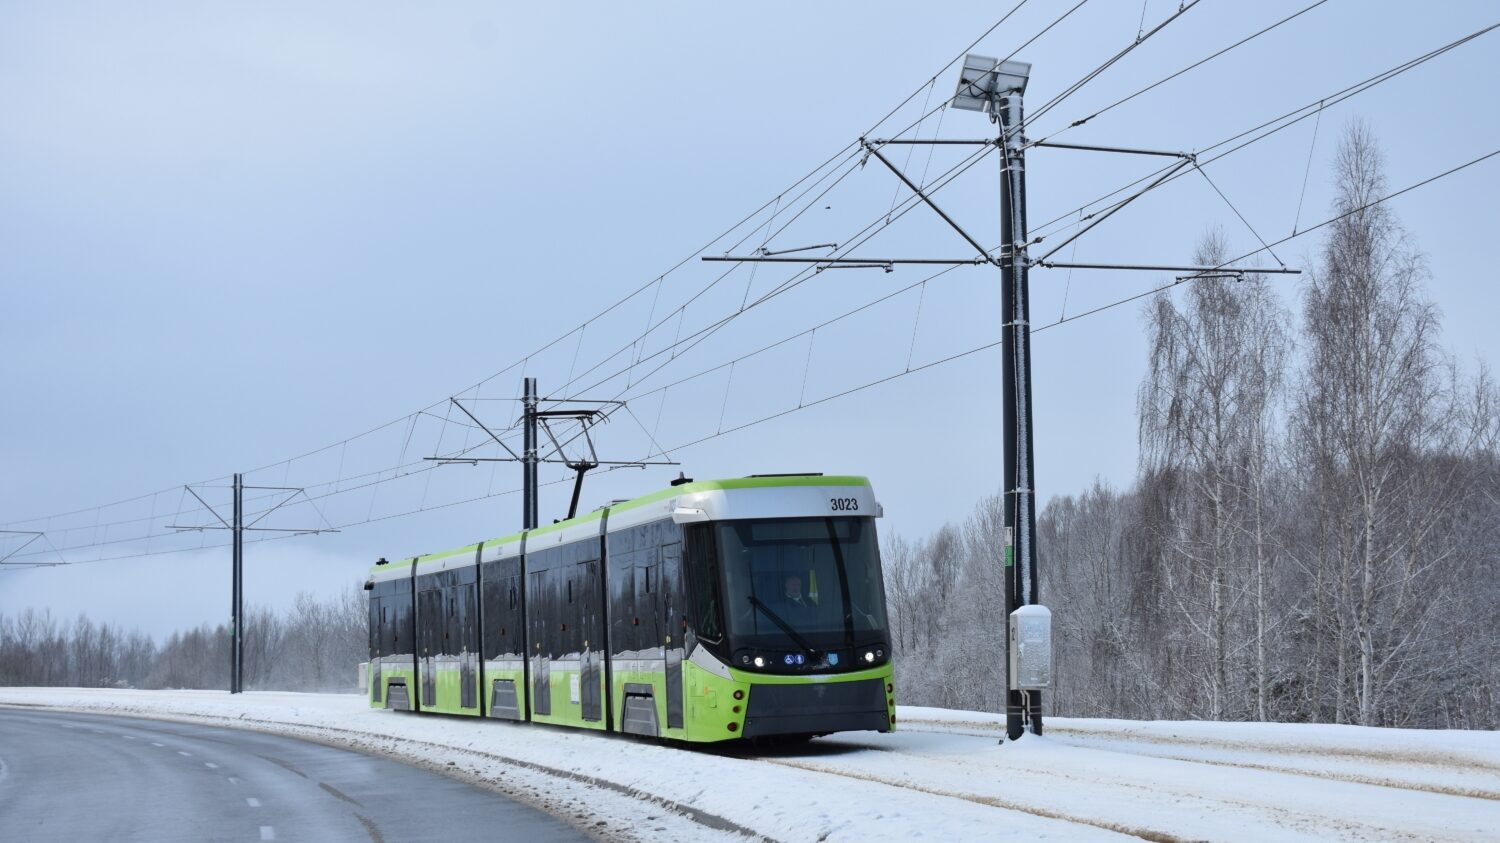 Do provozu bylo zařazeno v letech 2021 a 2022 celkem 12 tramvají Durmazlar Panorama. Další vozy téhož provedení k nim však nepřibydou. (foto: Libor Hinčica)